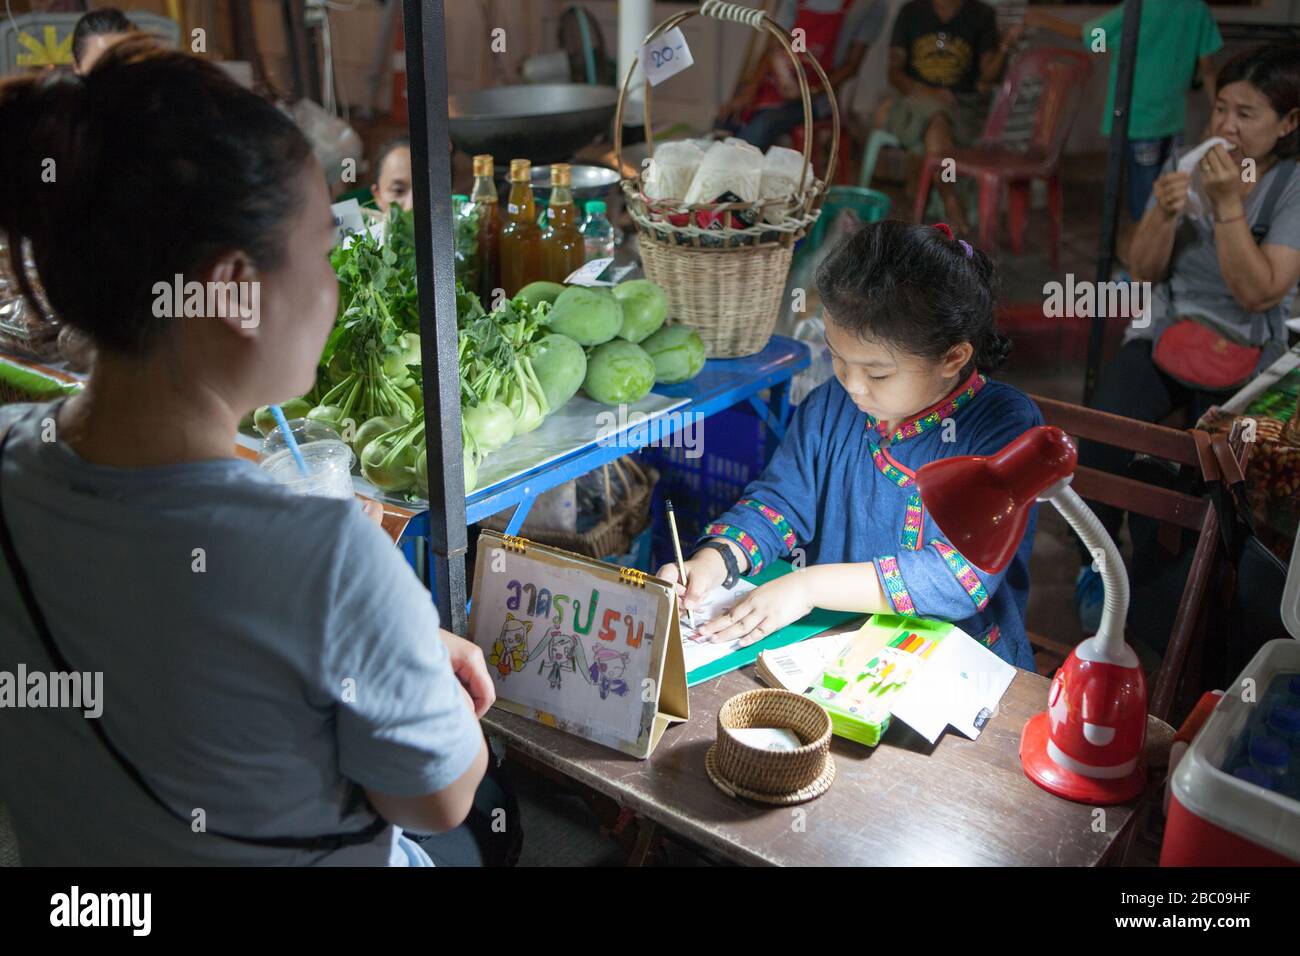 Marché de nuit et Cour alimentaire dans le centre de la ville de Chiang Rai. Il se compose de nombreux petits pieds bordant la rue étroite. Jeune fille dessine un modèle. Banque D'Images